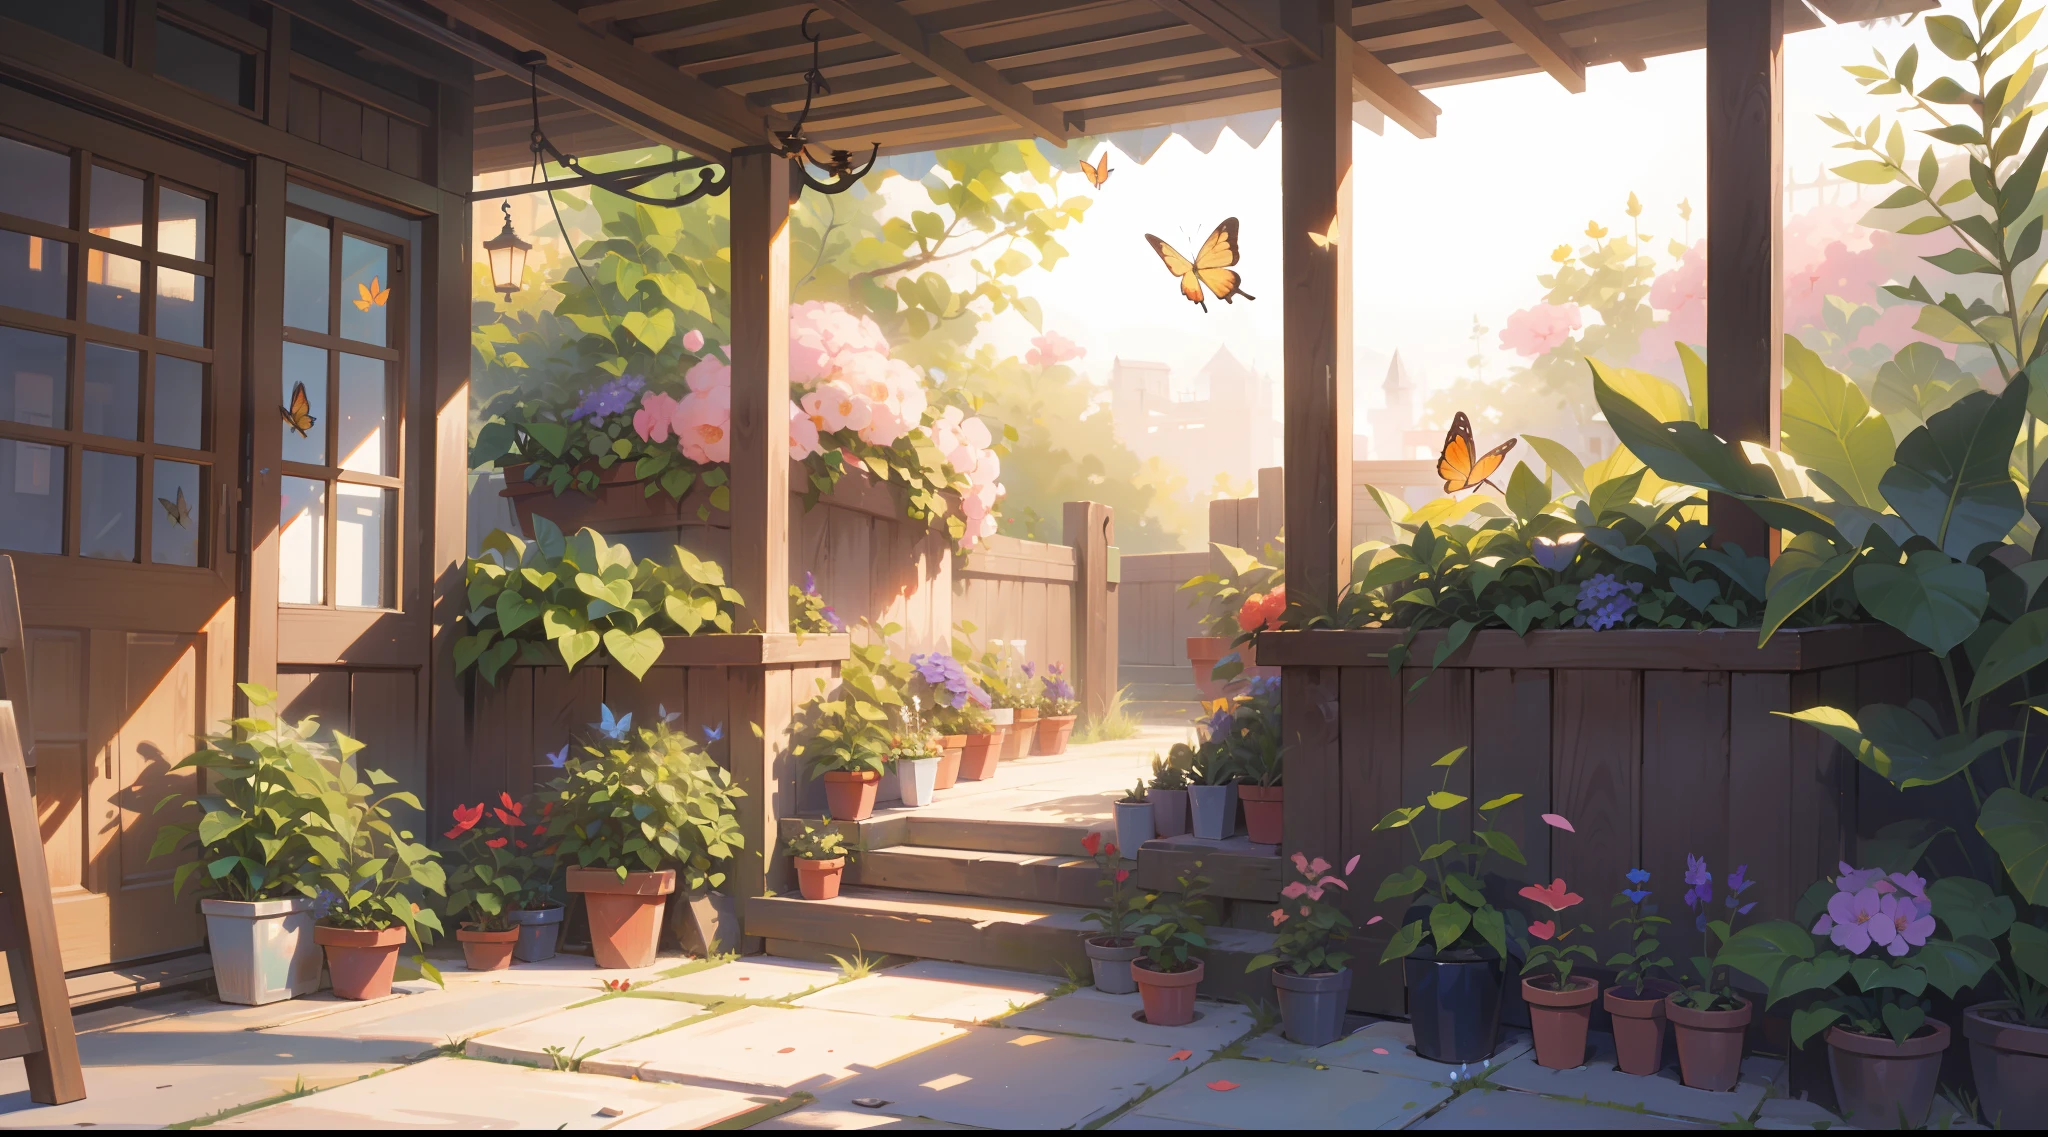 (шедевр), Лучшее качество, сверхвысокое разрешение, острый фокус, теплые пастельные тона, теплый солнечный свет, Мягкая тень, сад на заднем дворе, растения, цветы, бабочки